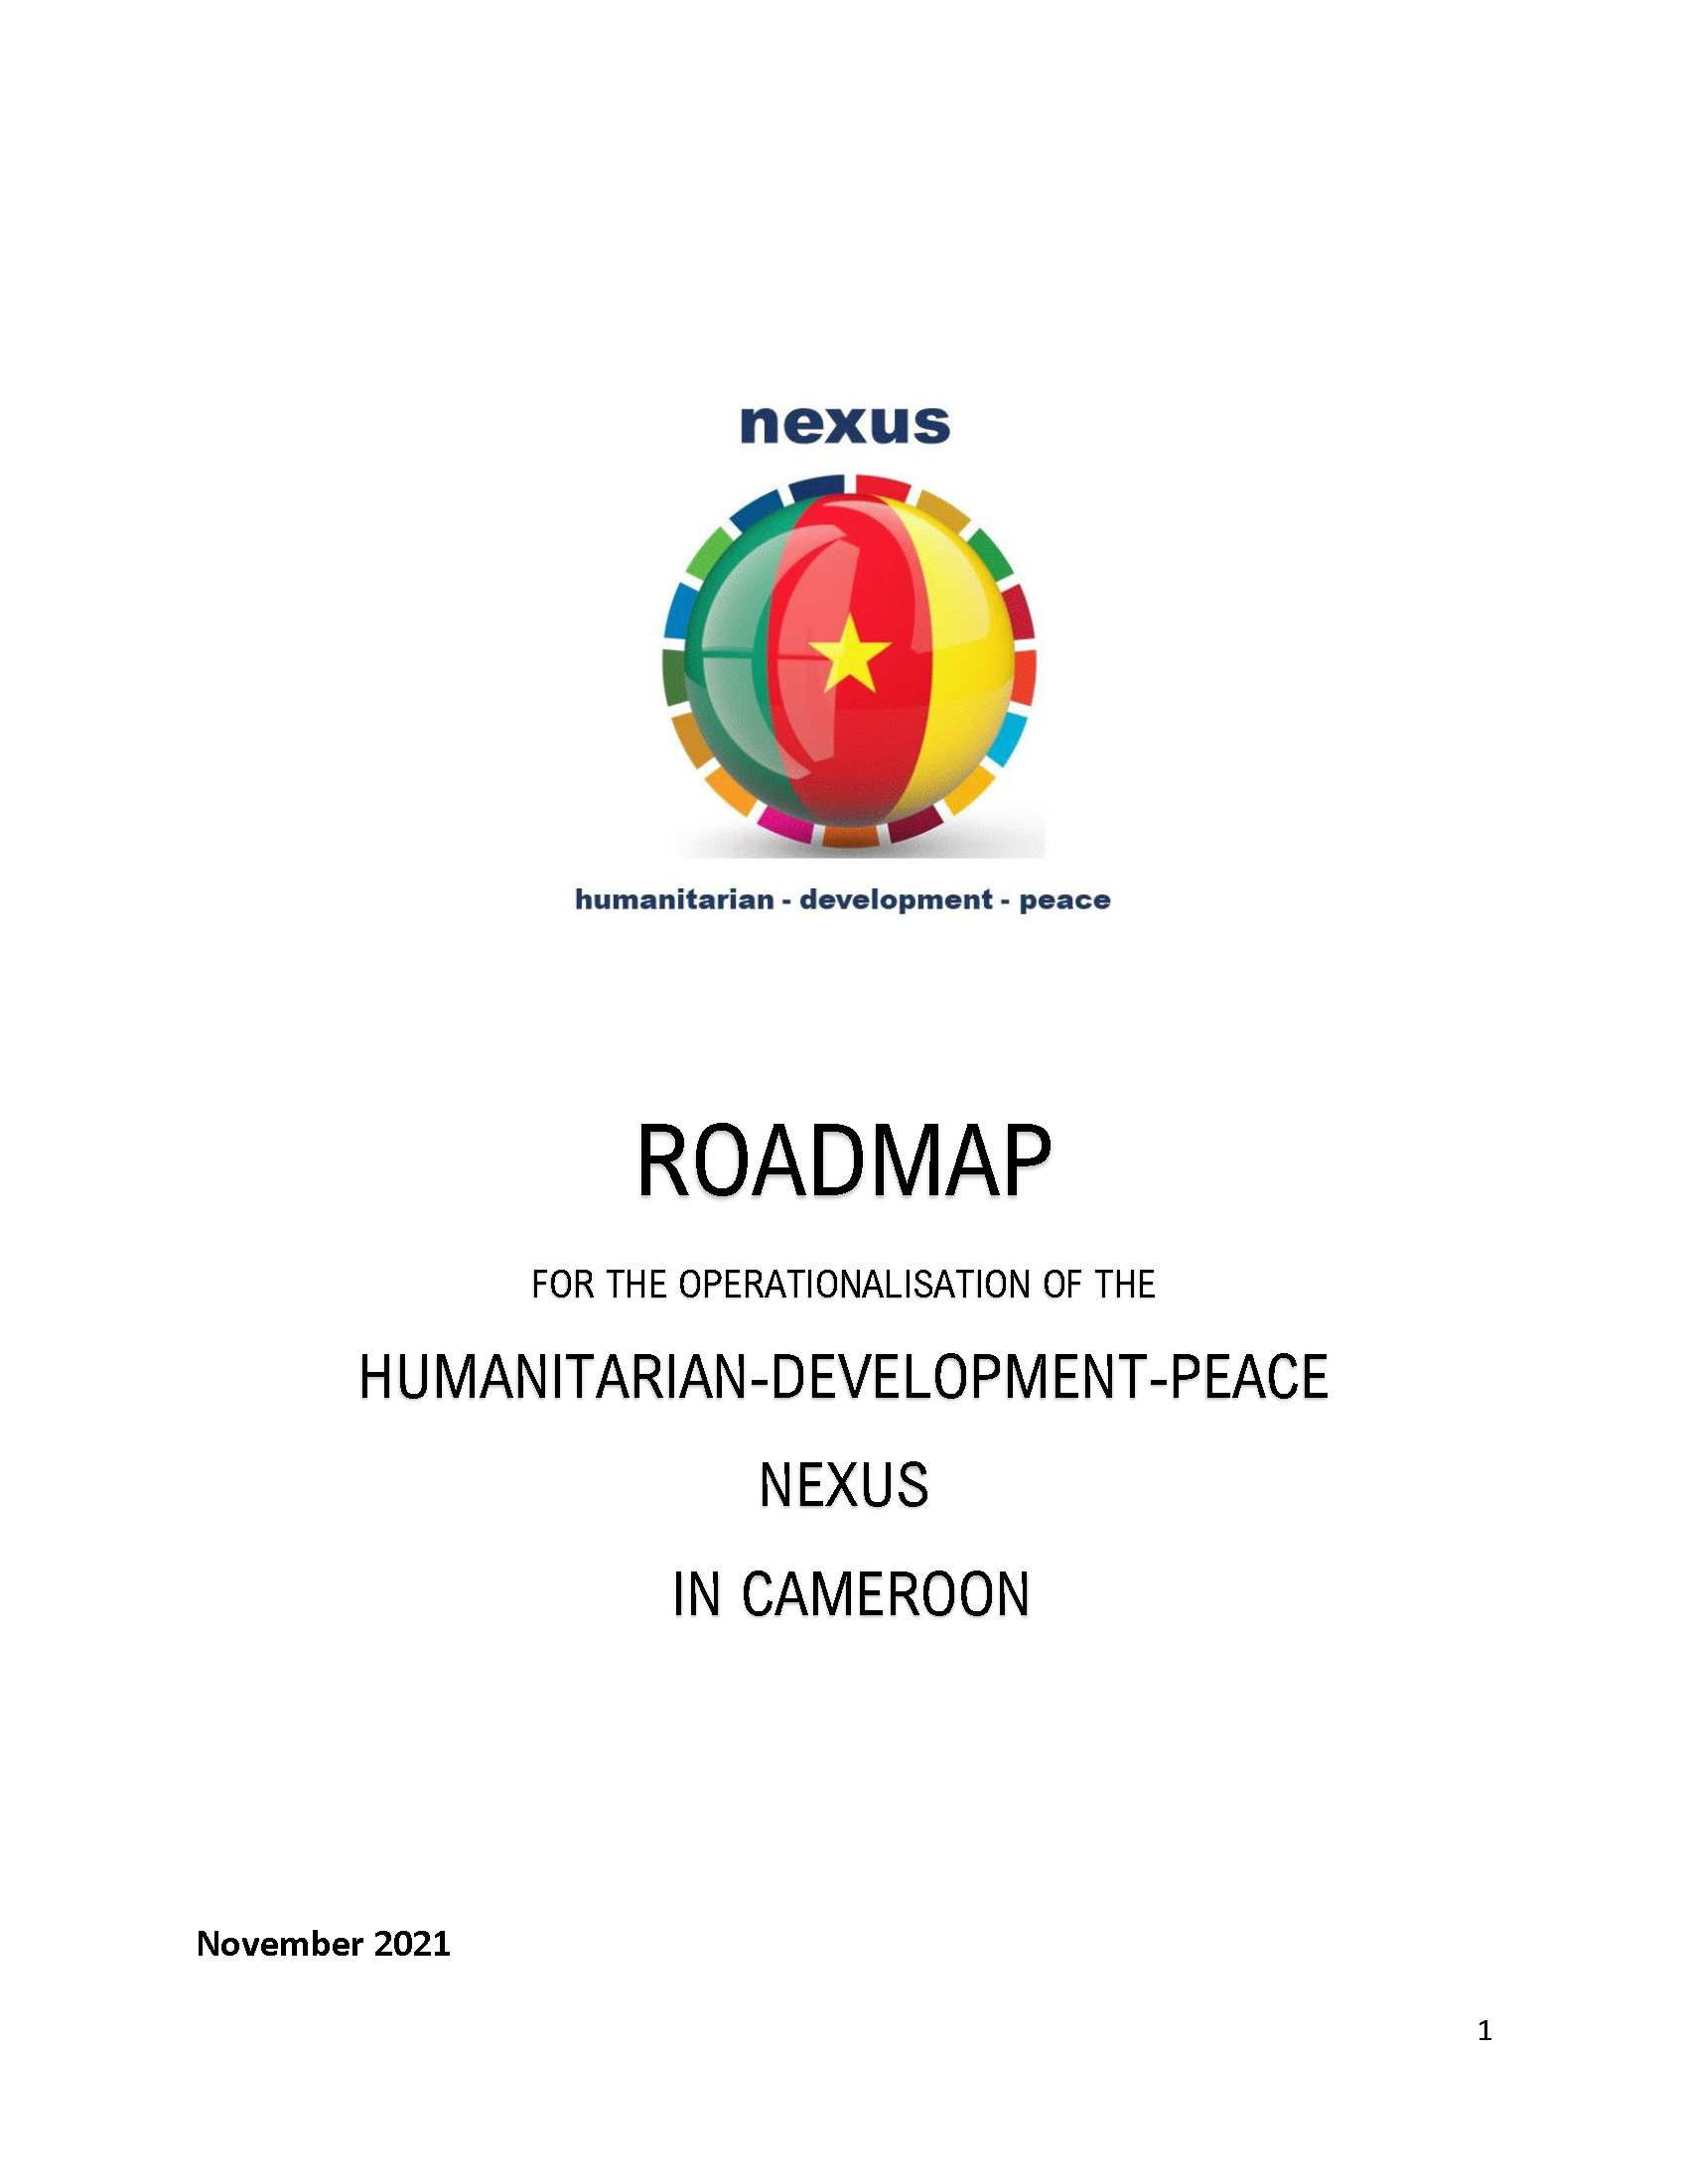 Page de couverture de la Feuille de route pour l’opérationnalisation du Nexus Humanitaire-Développement-Paix au Cameroun